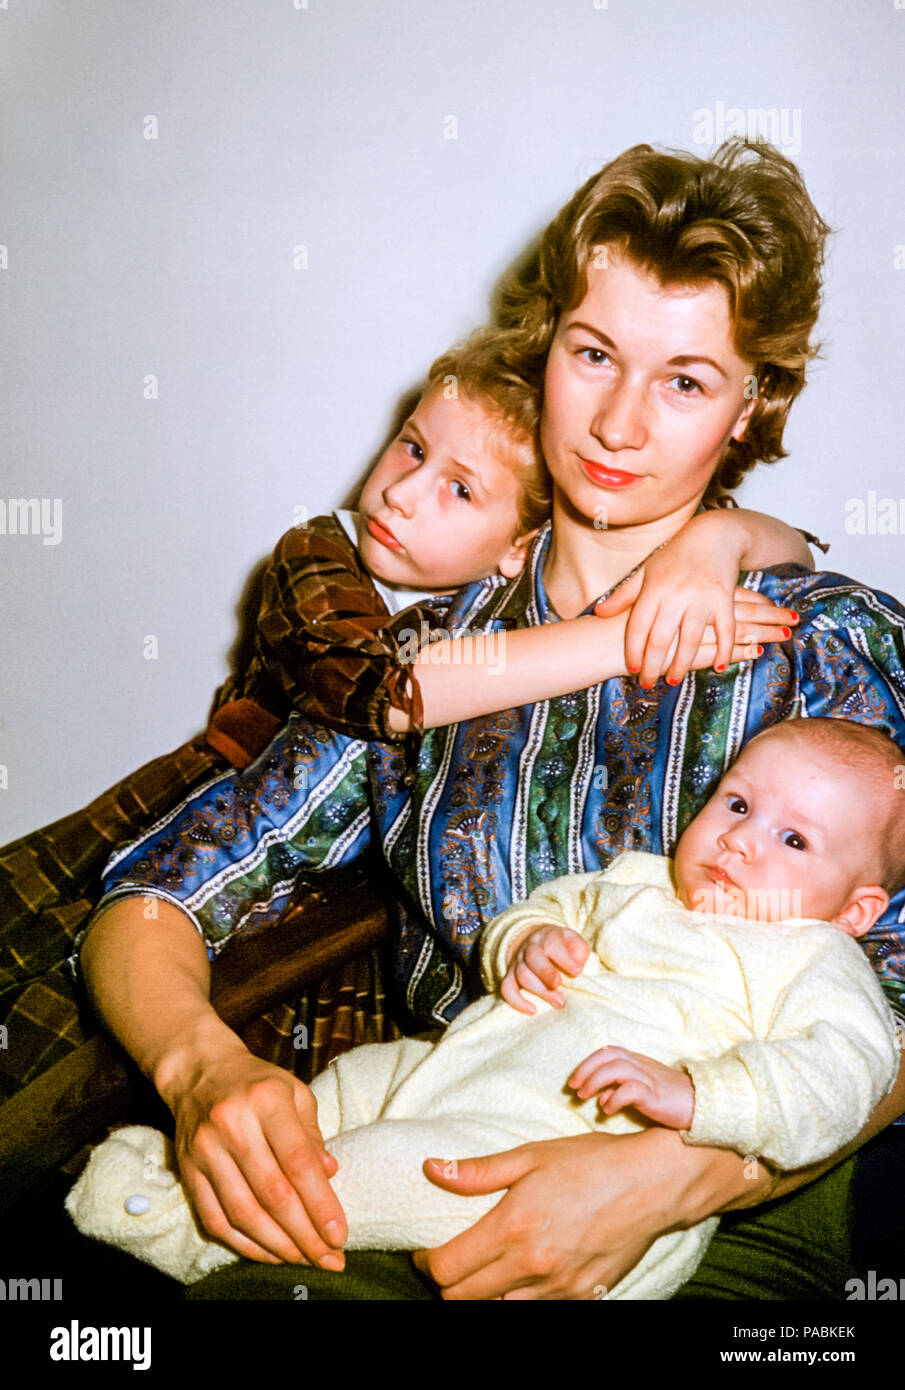 Ritratto di famiglia di madre e due figli negli Stati Uniti negli anni '60.  La giovane donna ha capelli biondi e indossa rossetto rosso. La bambina  bionda di 4 anni abbraccia la